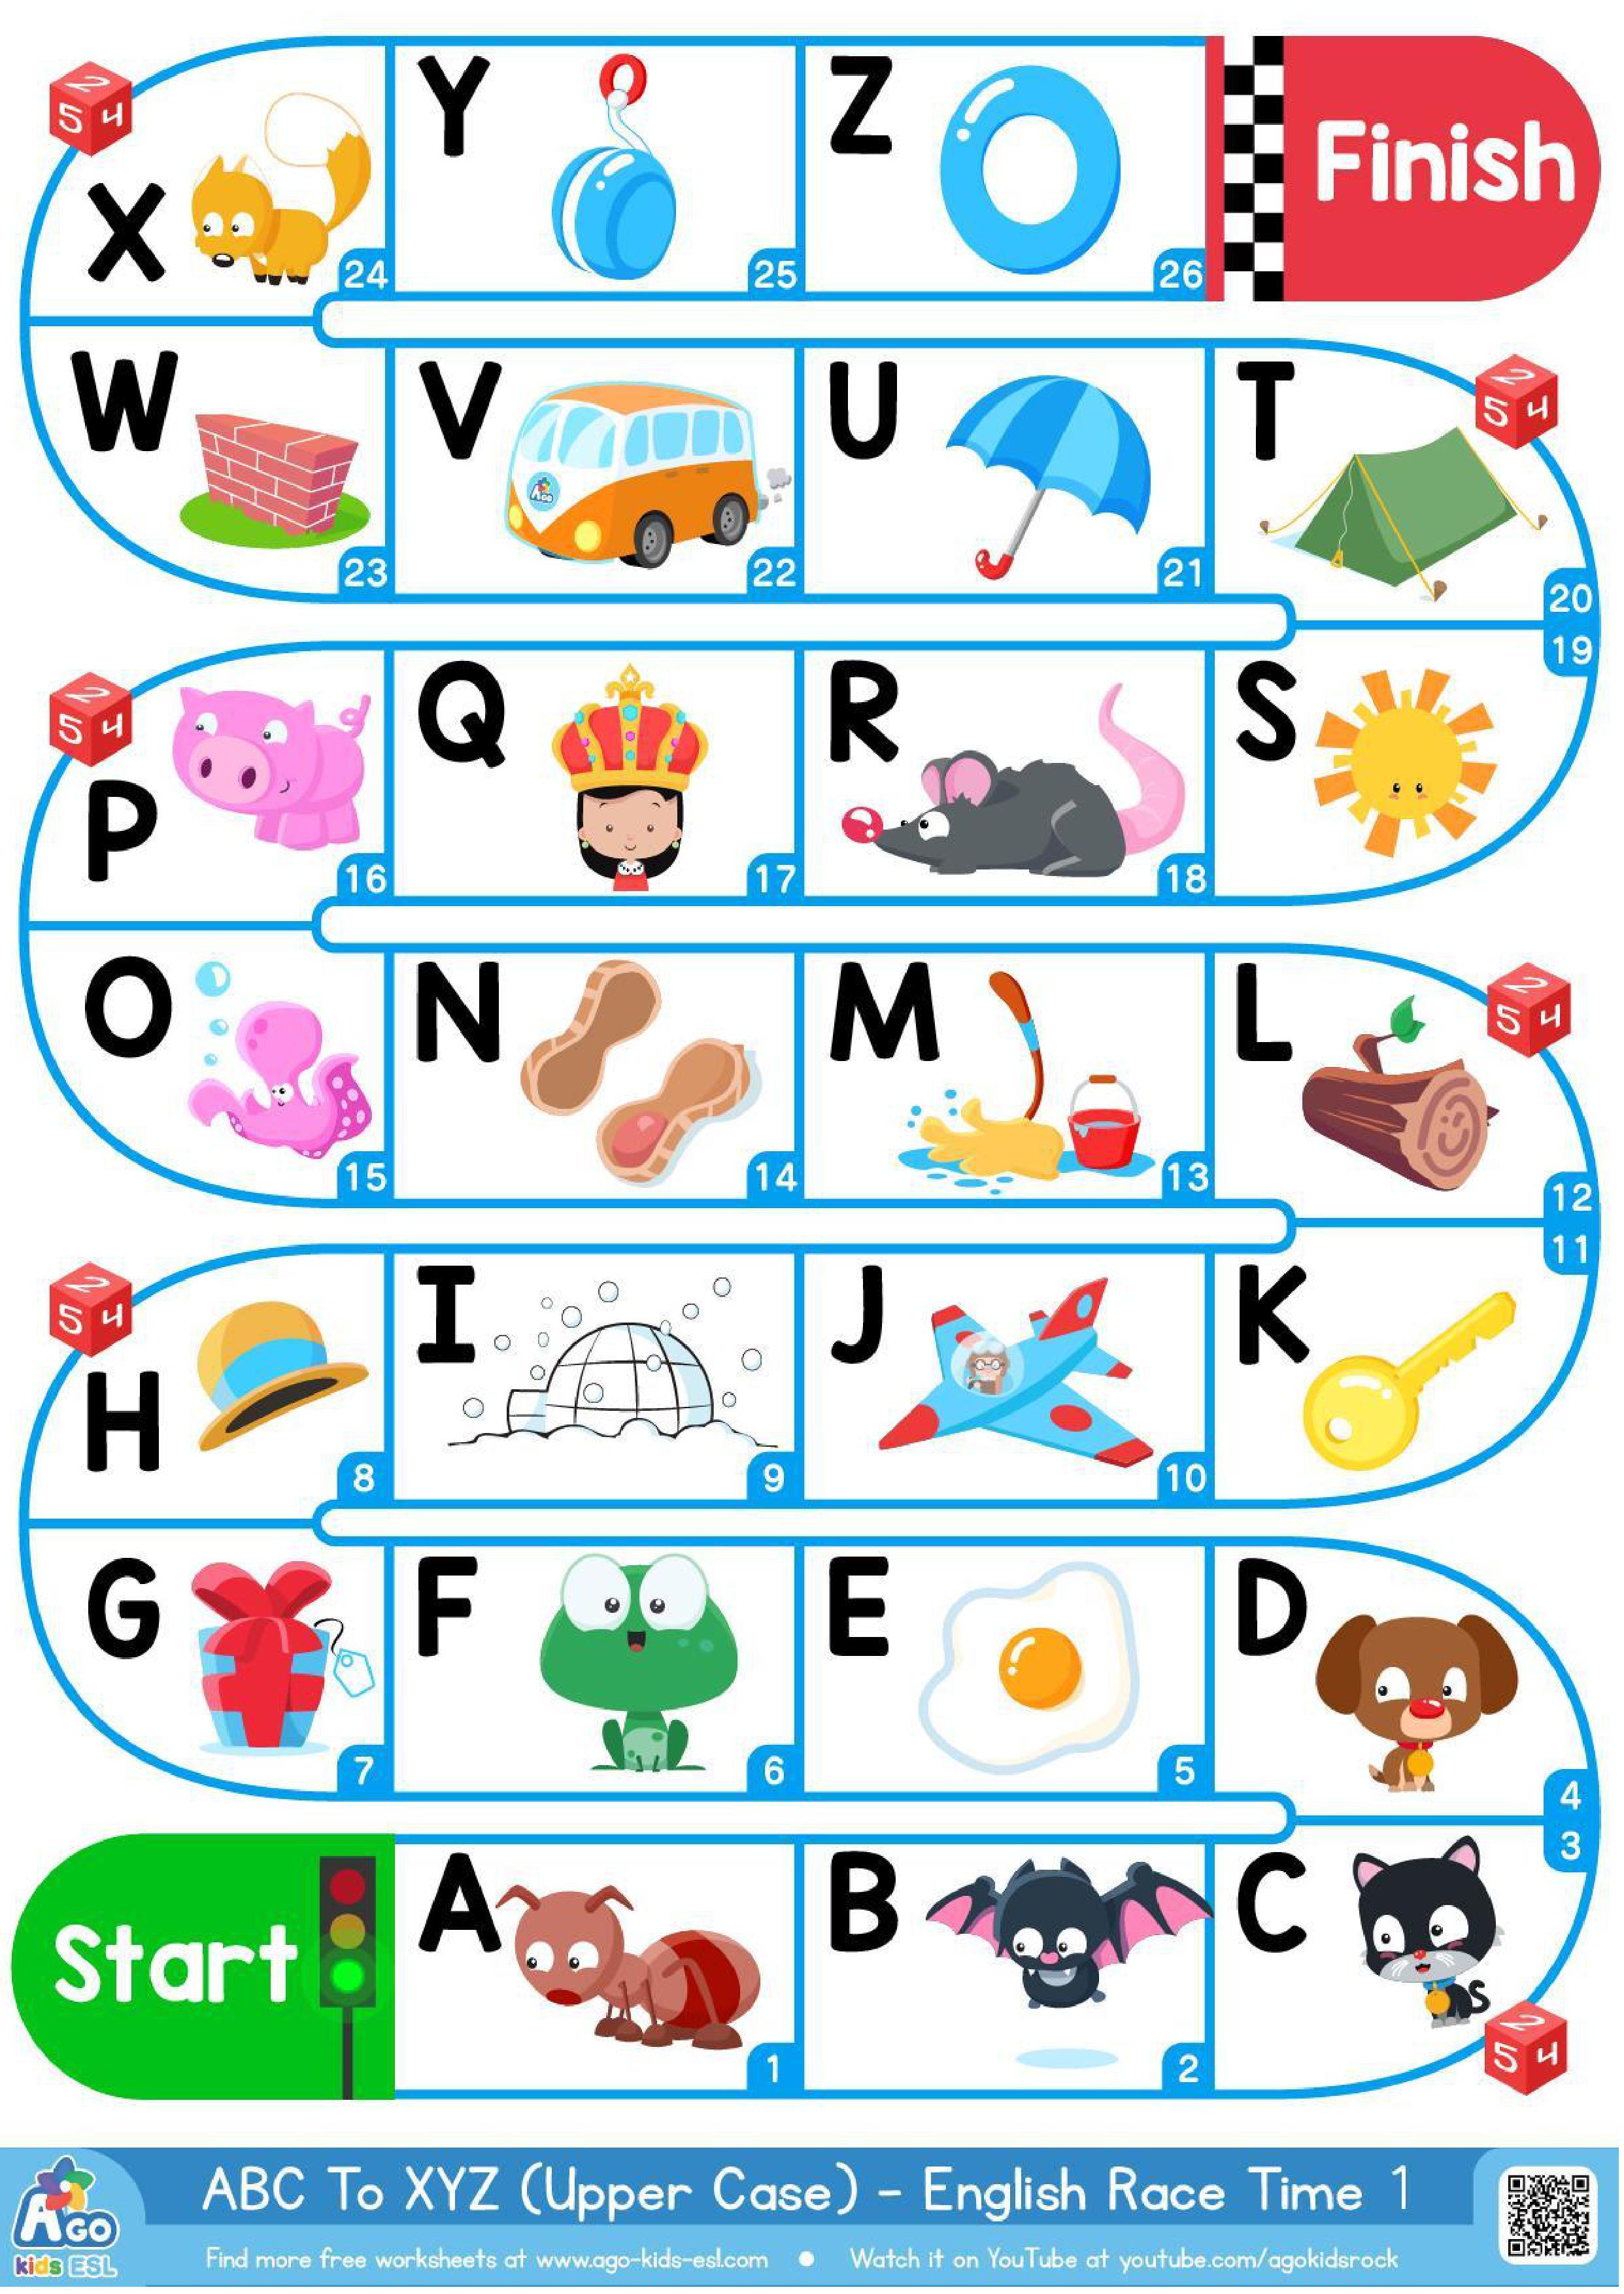 Grammar corner A-Z Upper Case Alphabet Board Game